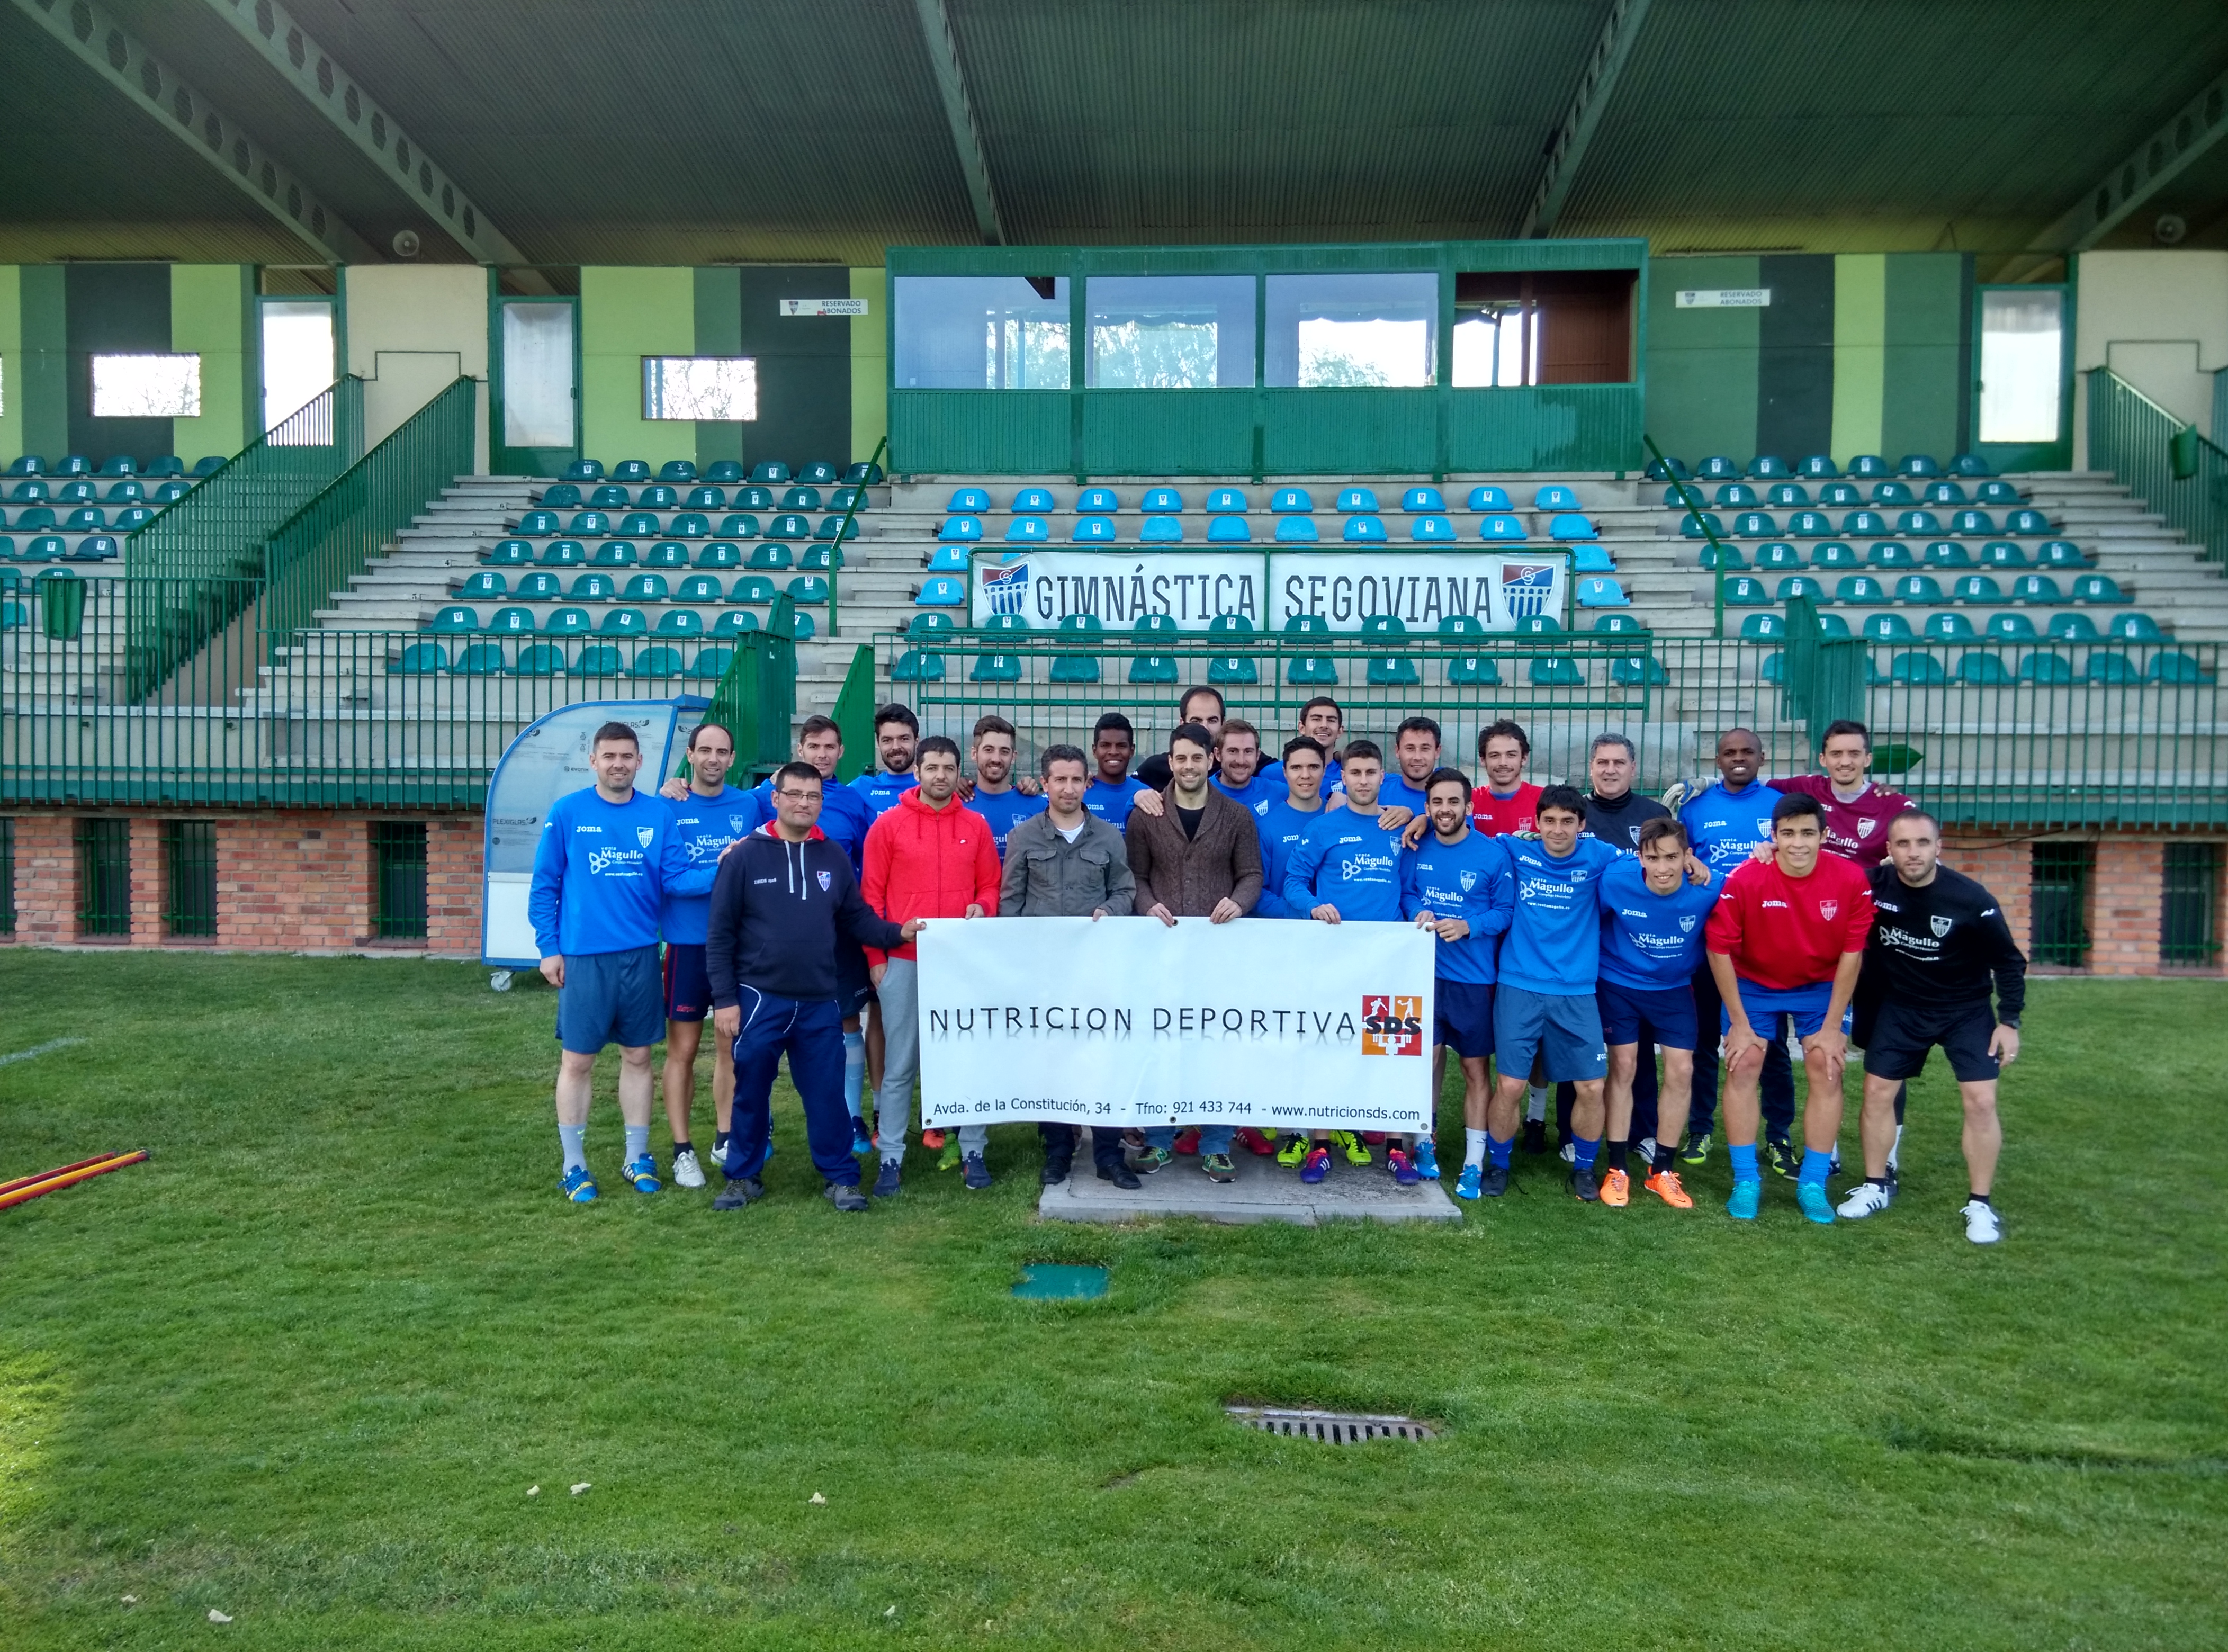 La Gimnástica Segoviana CF. alcanza un acuerdo para recibir asesoramiento en Nutrición Deportiva